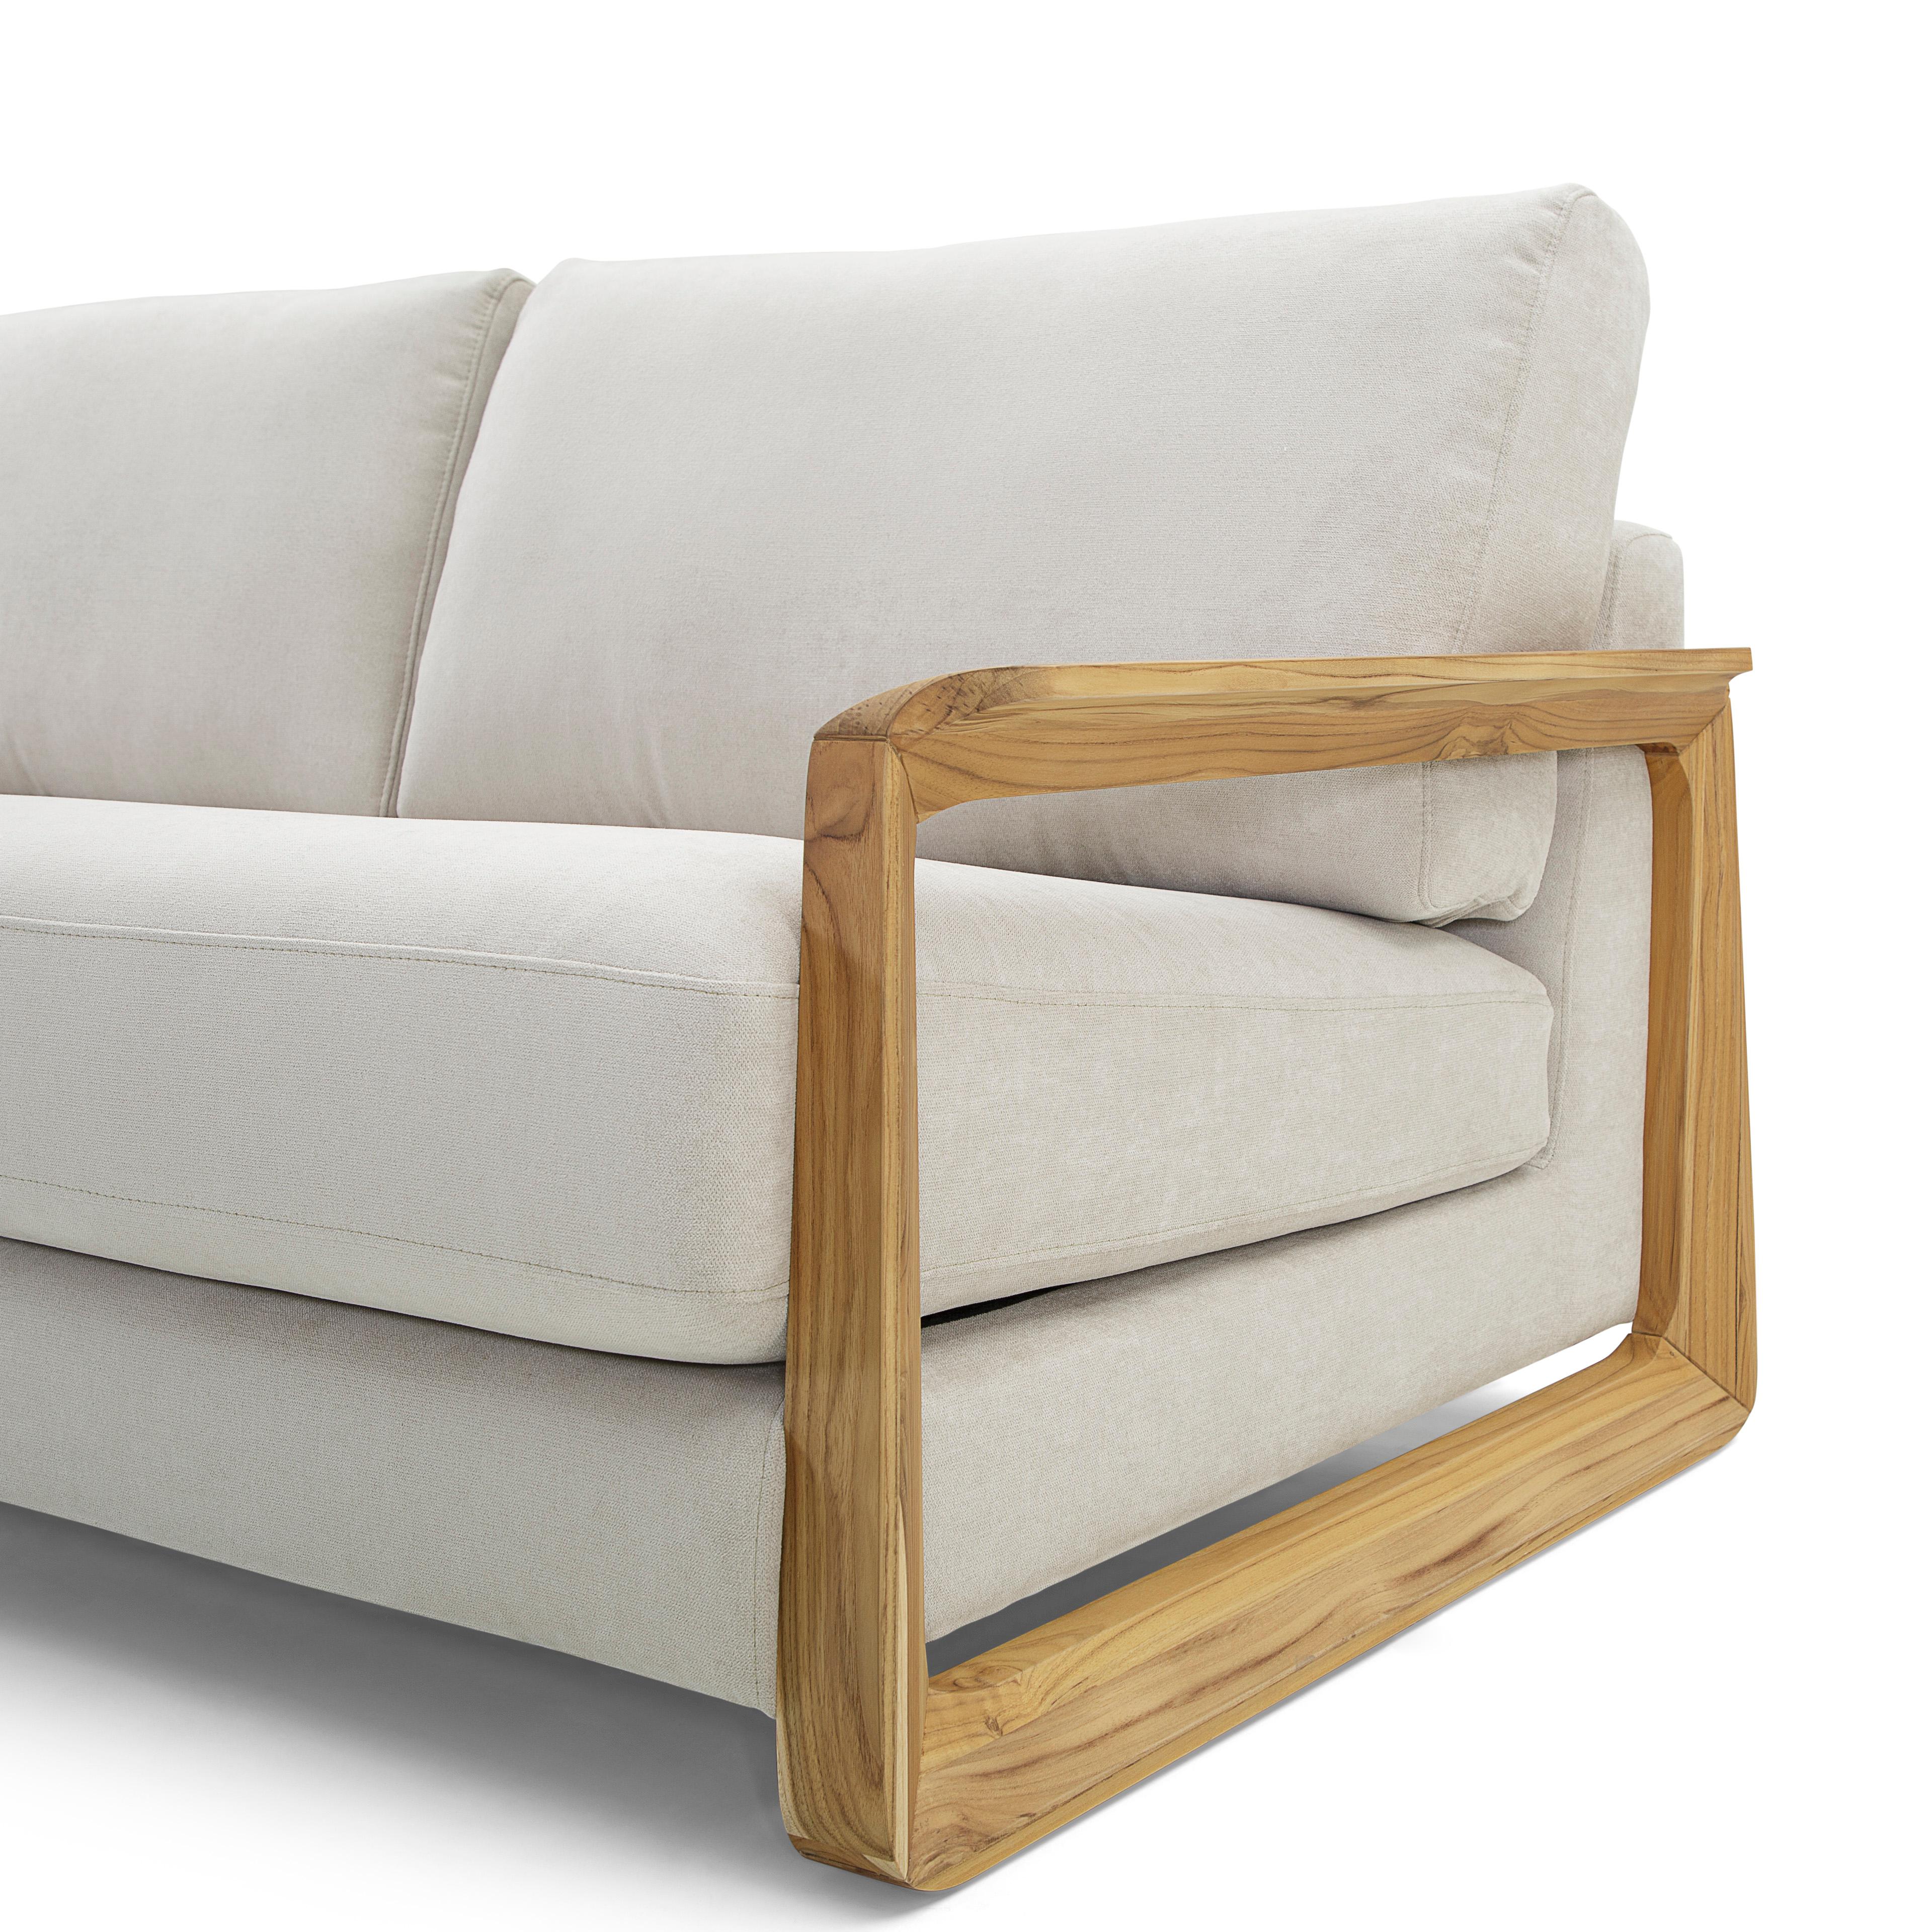 Le canapé contemporain Fine revêtu d'un superbe tissu avoine et ses accoudoirs en finition bois de teck, est la combinaison parfaite pour votre salon. Aussi relaxant que cela puisse paraître, le siège réel est encore meilleur. Ce canapé complète